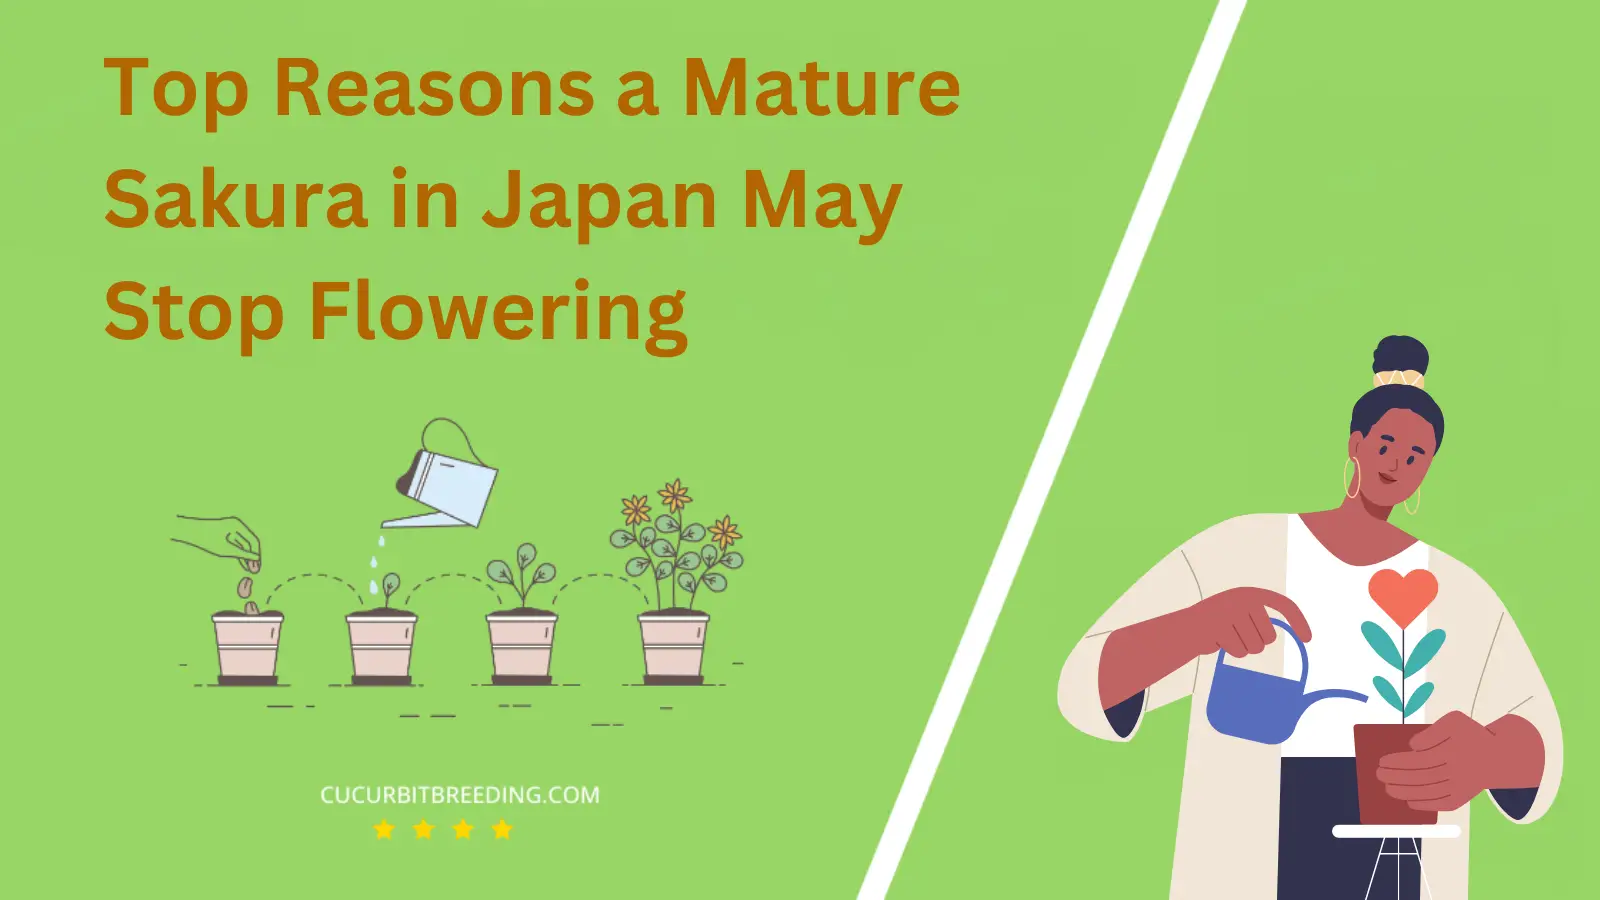 Top Reasons a Mature Sakura in Japan May Stop Flowering